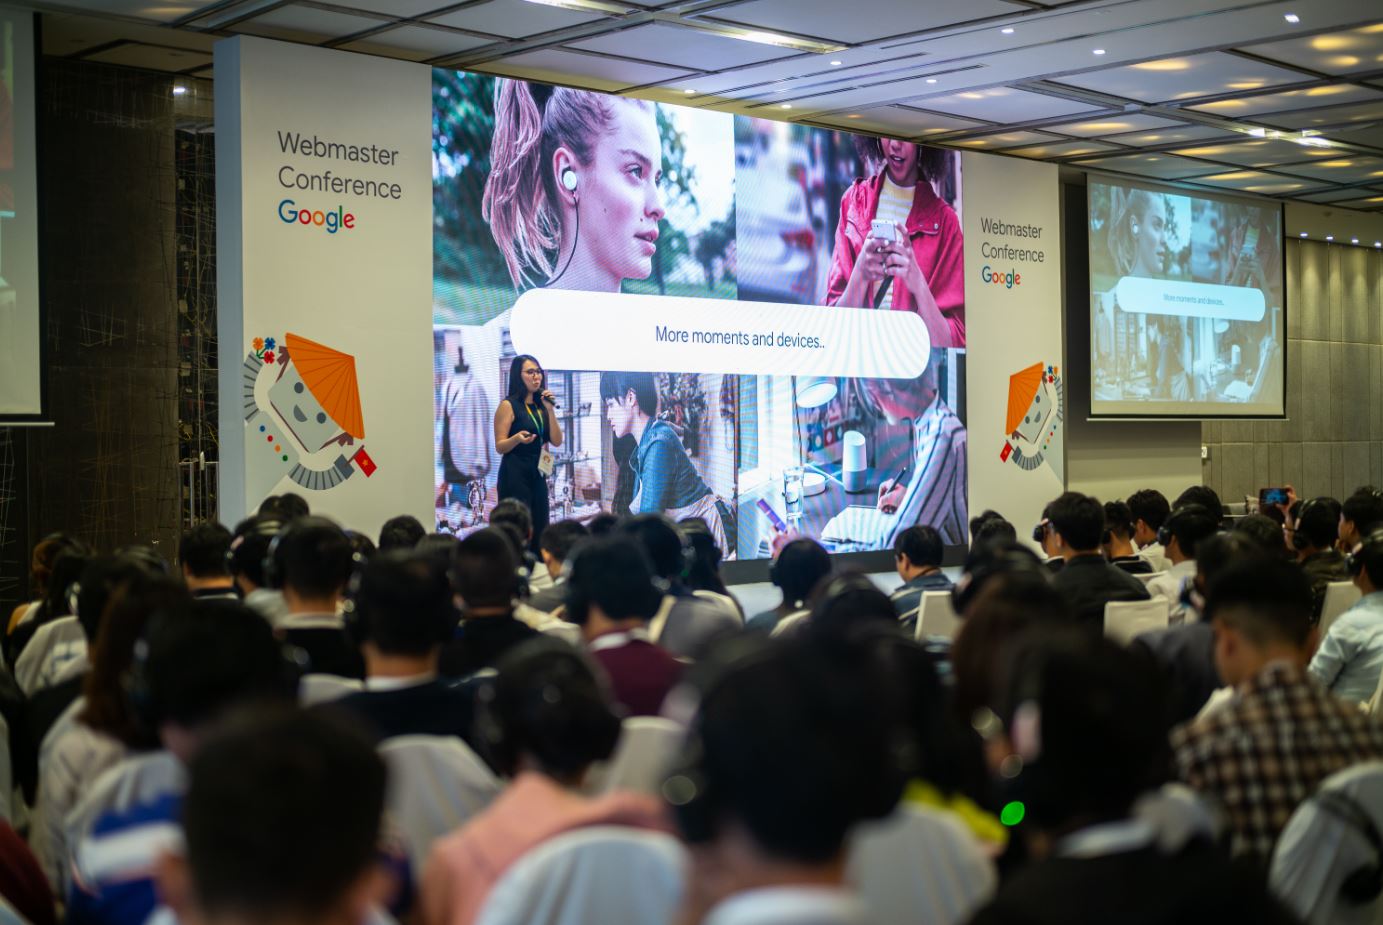 Webmaster Conference - Hội thảo miễn phí hướng dẫn tối ưu hiệu suất website lần đầu tiên được Google tổ chức tại Việt Nam